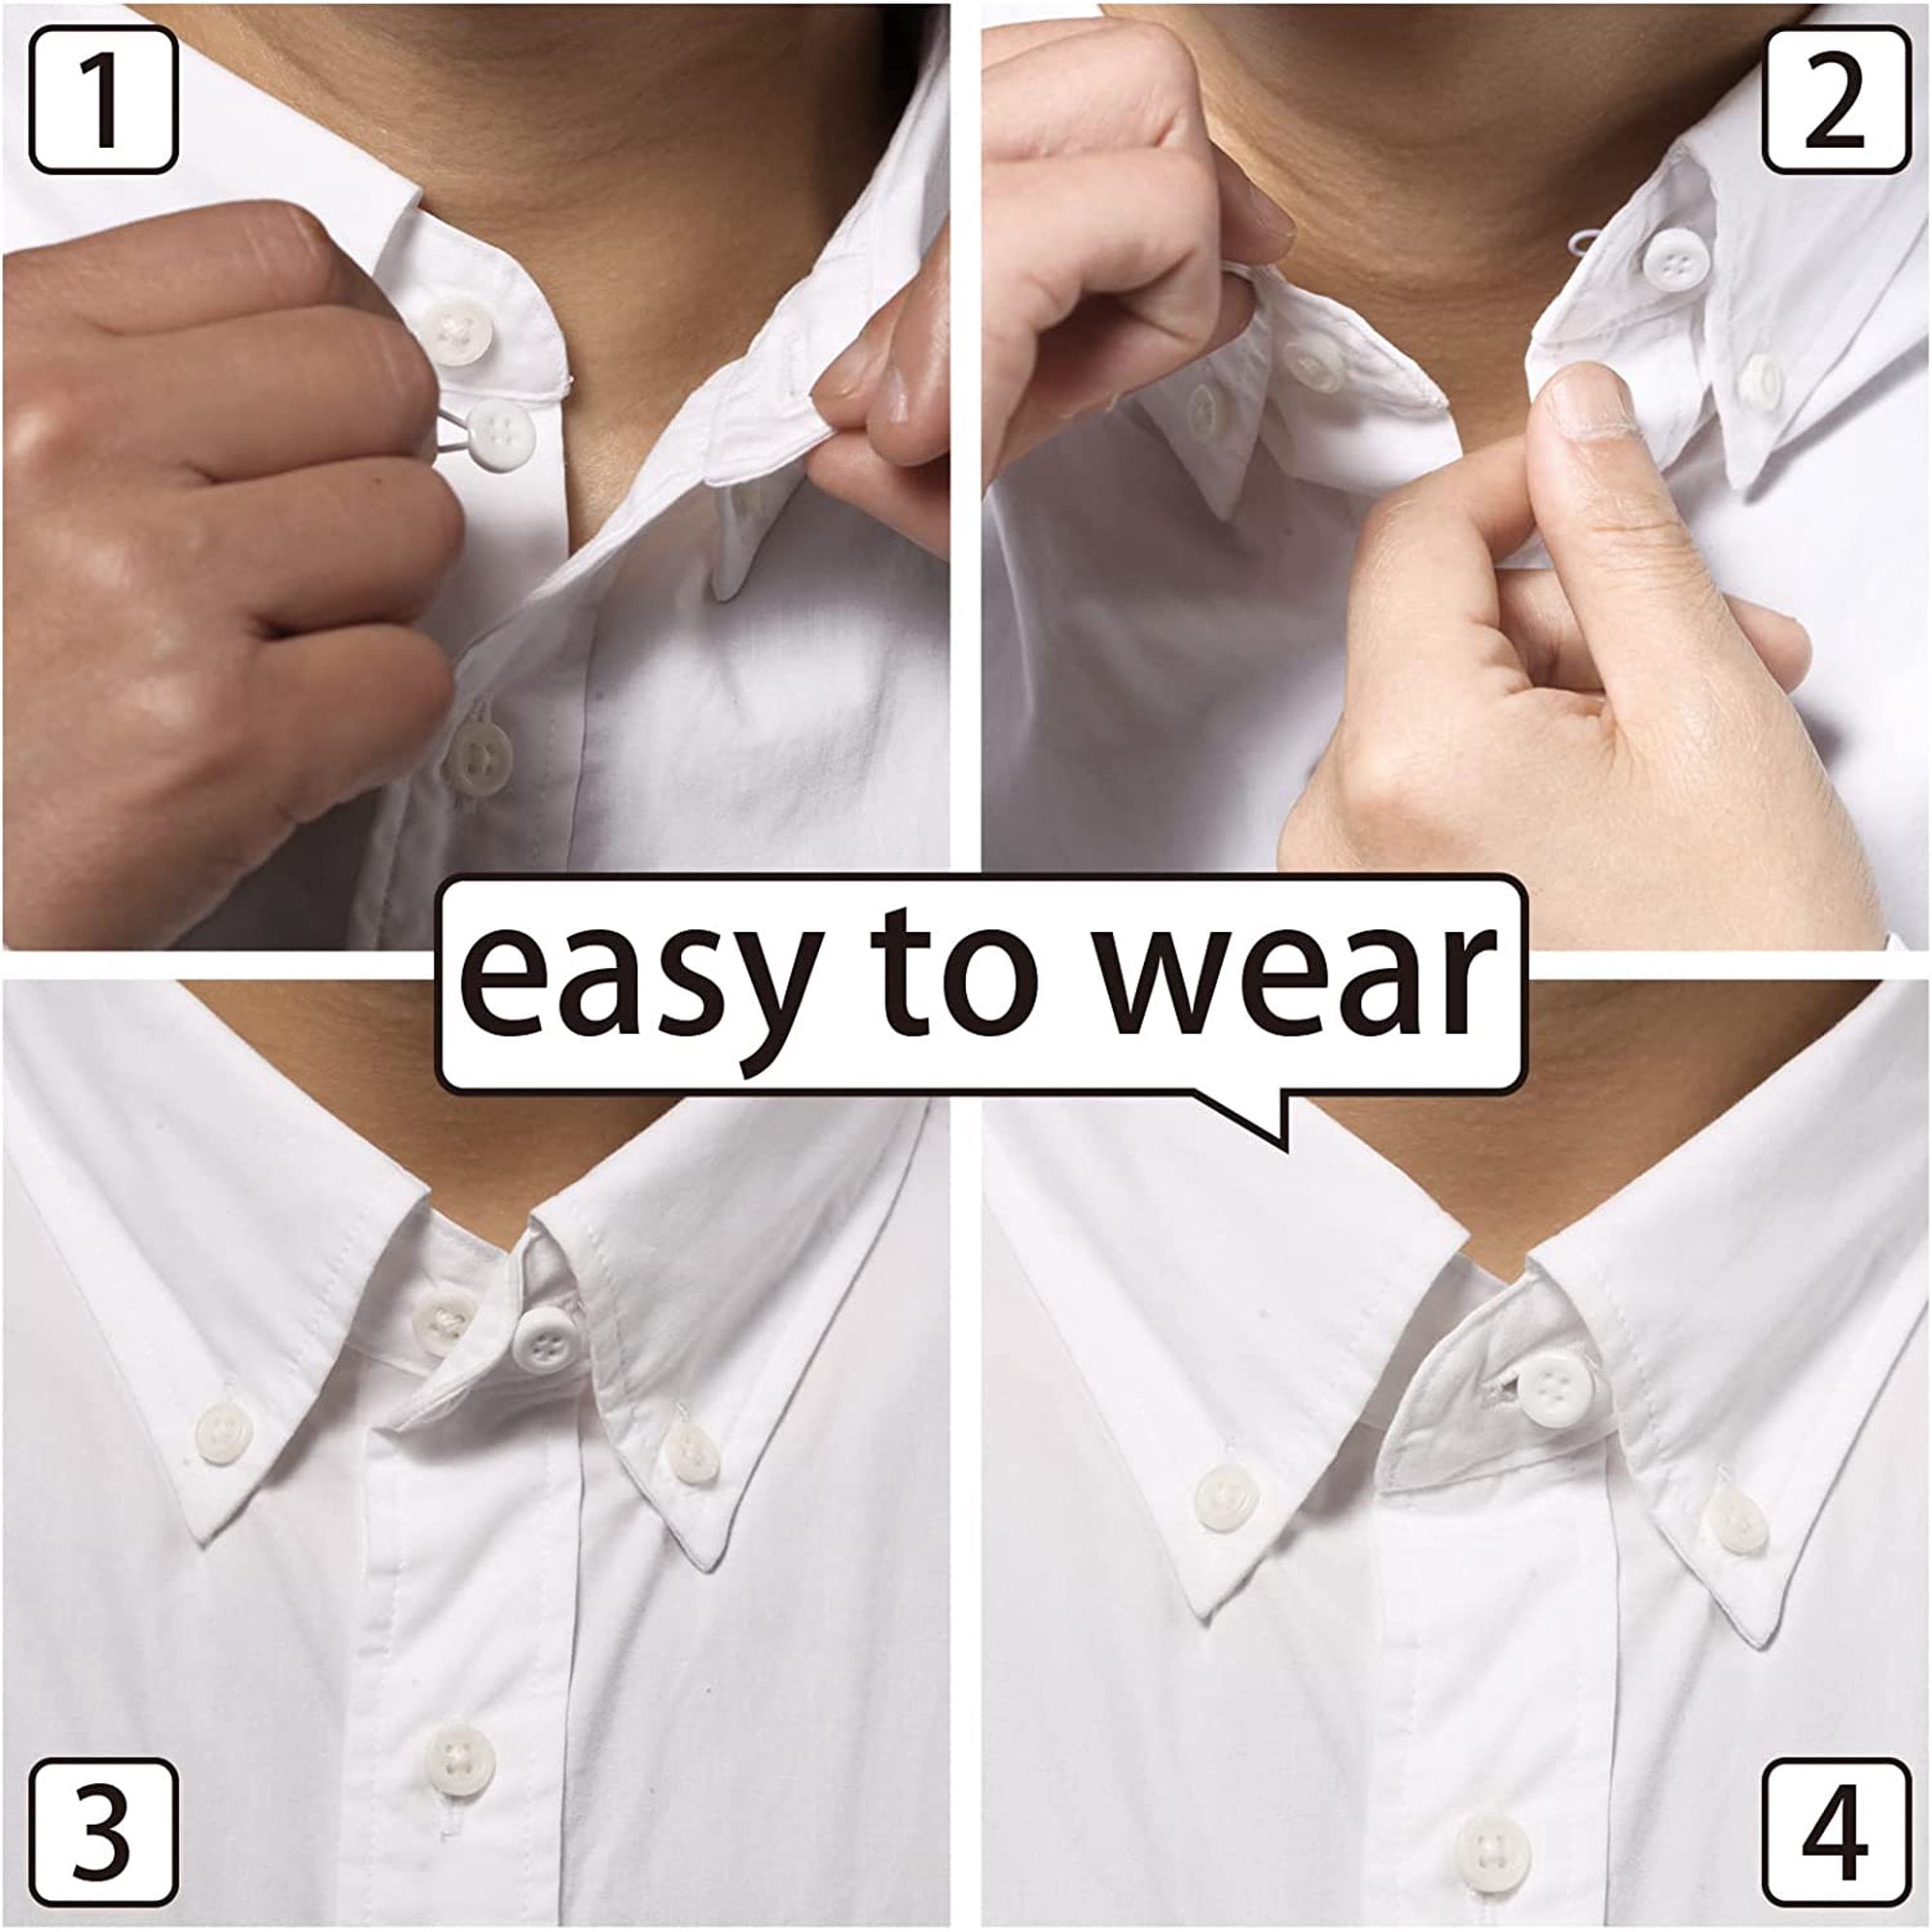 Trianu 6 Pcs Shirt Collar Button Extenders, Elastic Collar Extenders for Mens Shirts, Dress Shirt Tie Neck Collar Button Expanders for Expanding